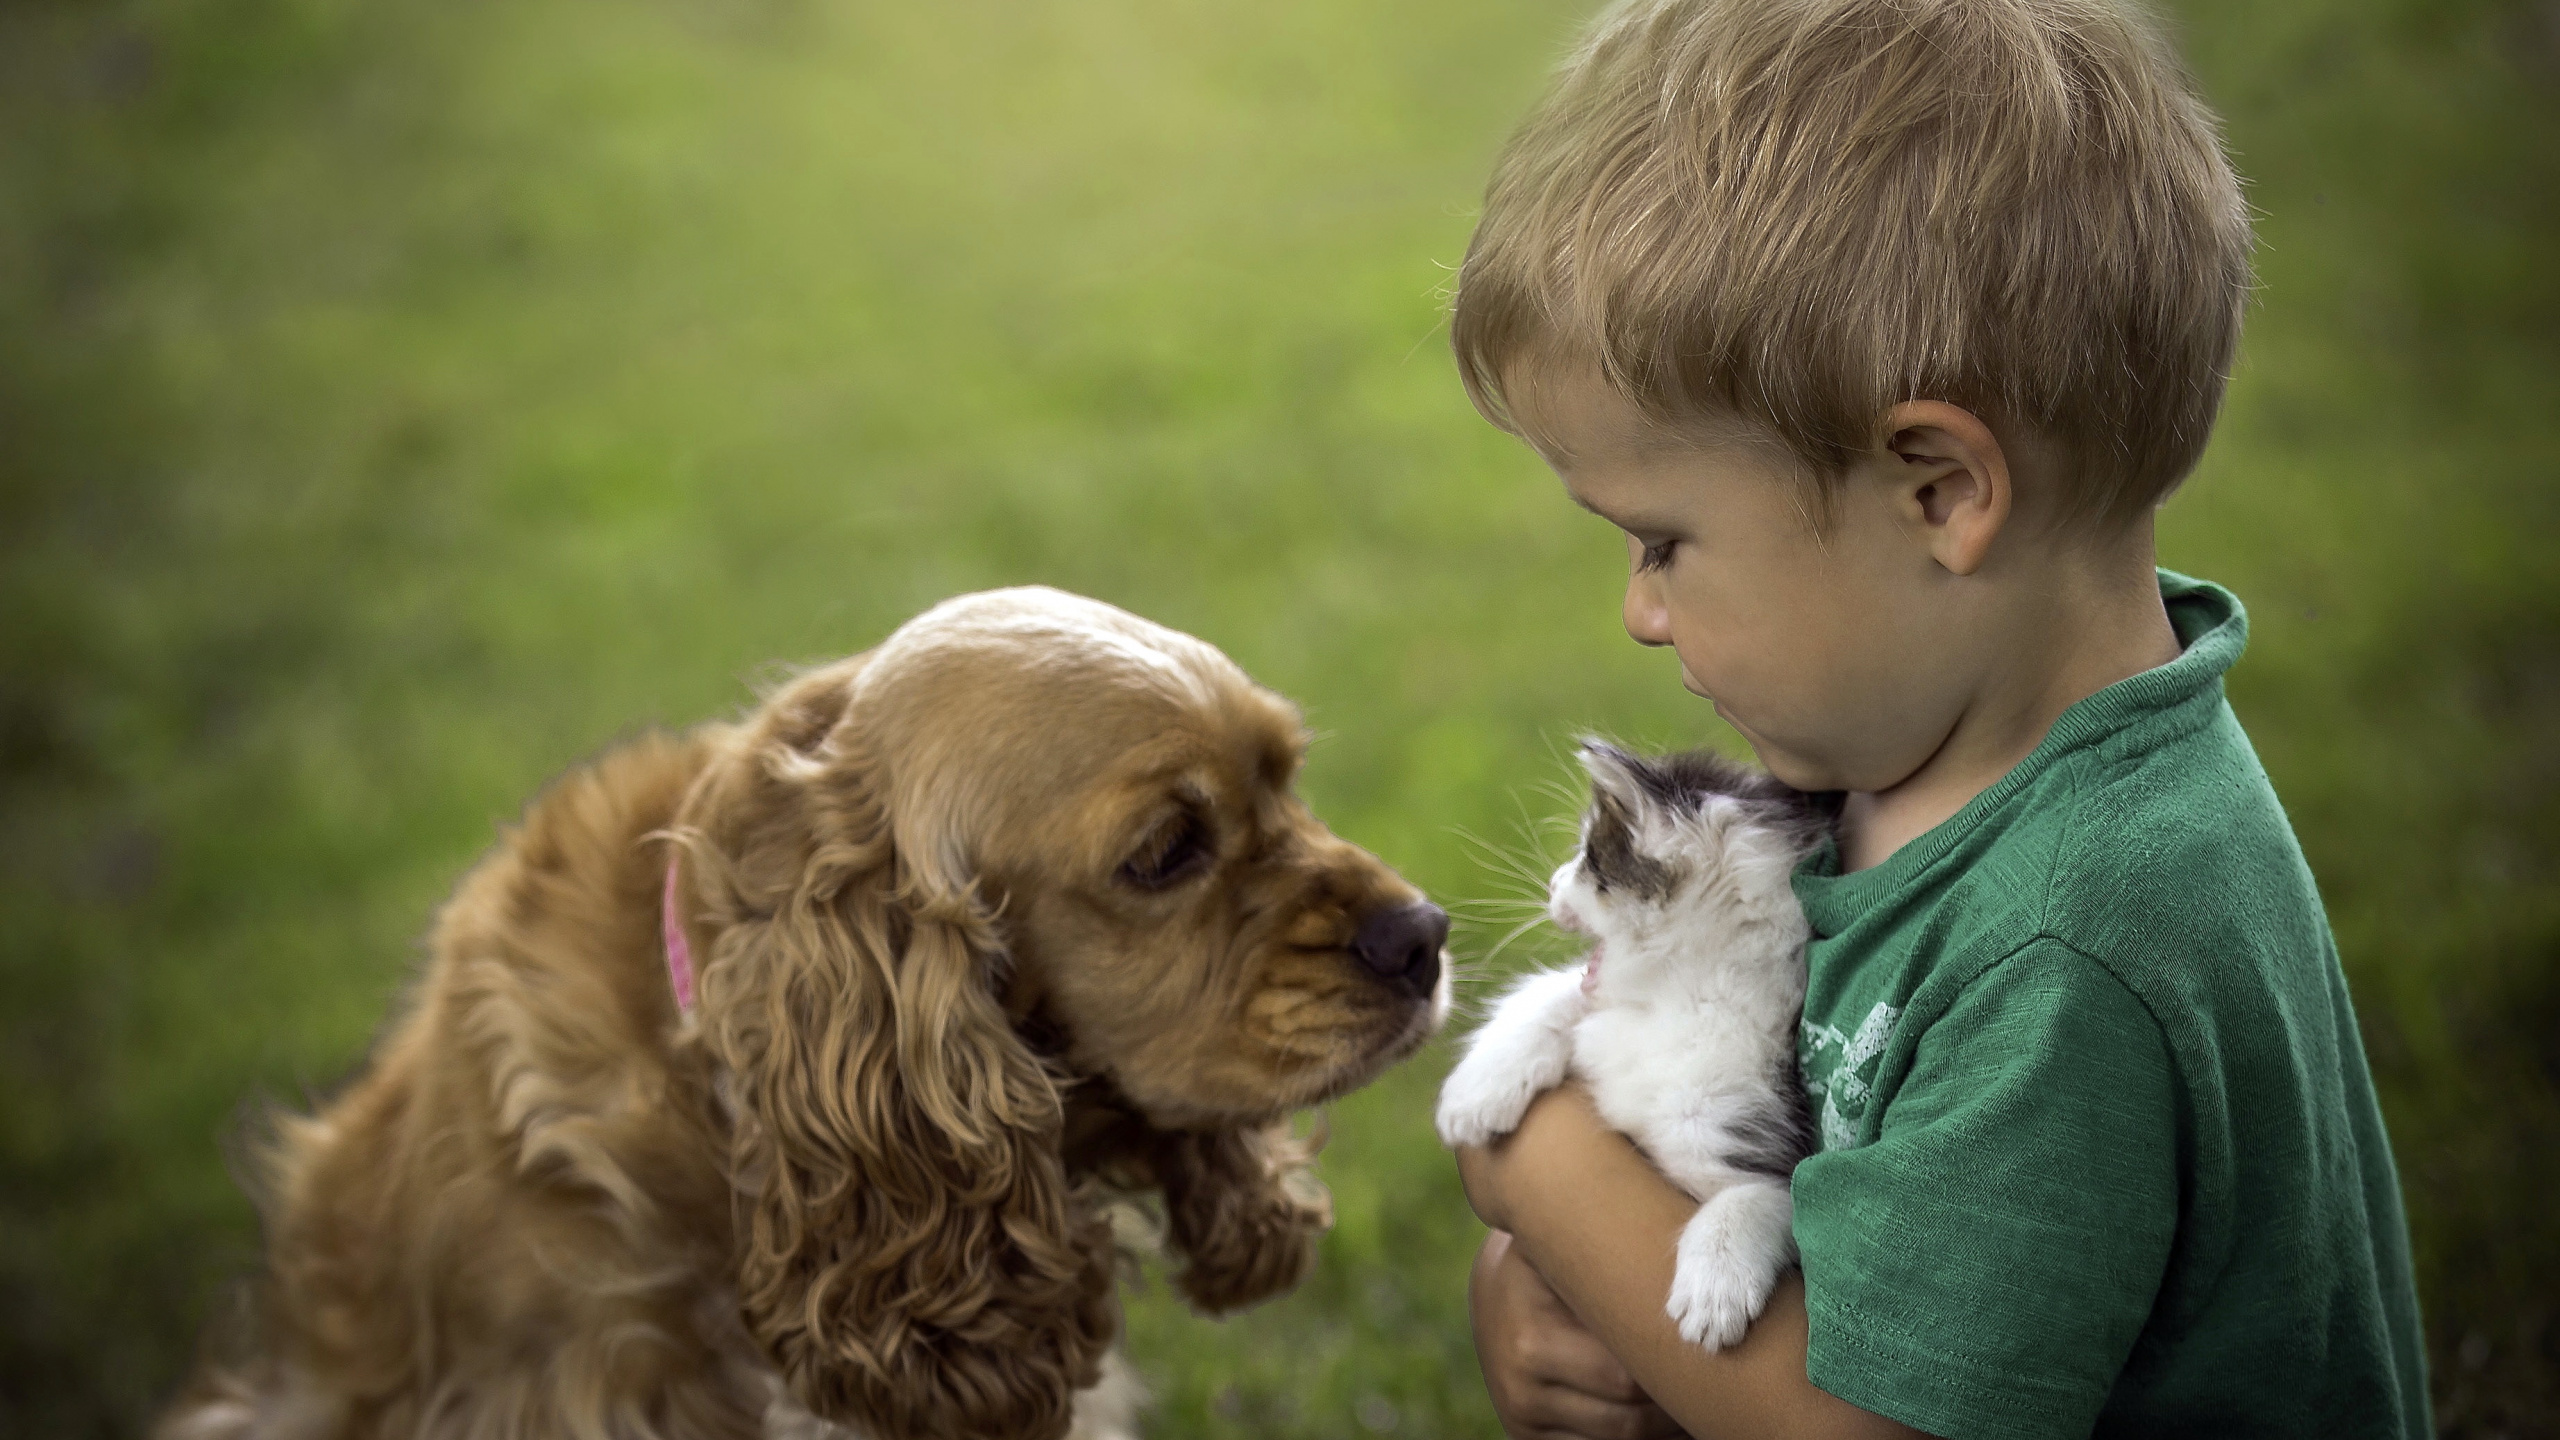 小狗, 品种的狗, 英语可卡犬, 美国可卡猎犬, 儿童 壁纸 2560x1440 允许